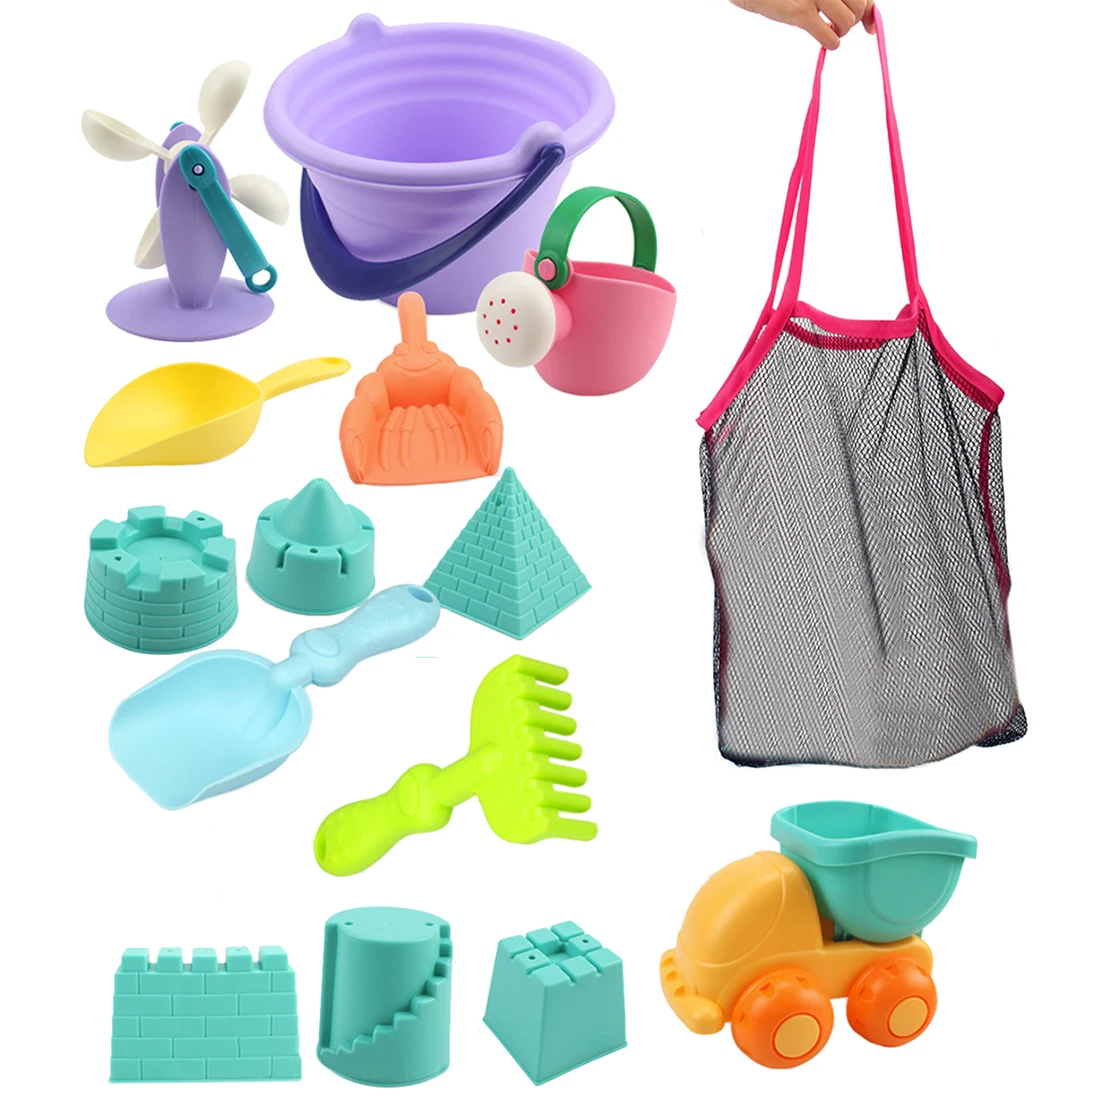 Горячая 15 шт./компл. пляжные игрушки для песка мягкие резиновые пляжный набор игрушек для детей Playset подарок для забавных игрушек для детей